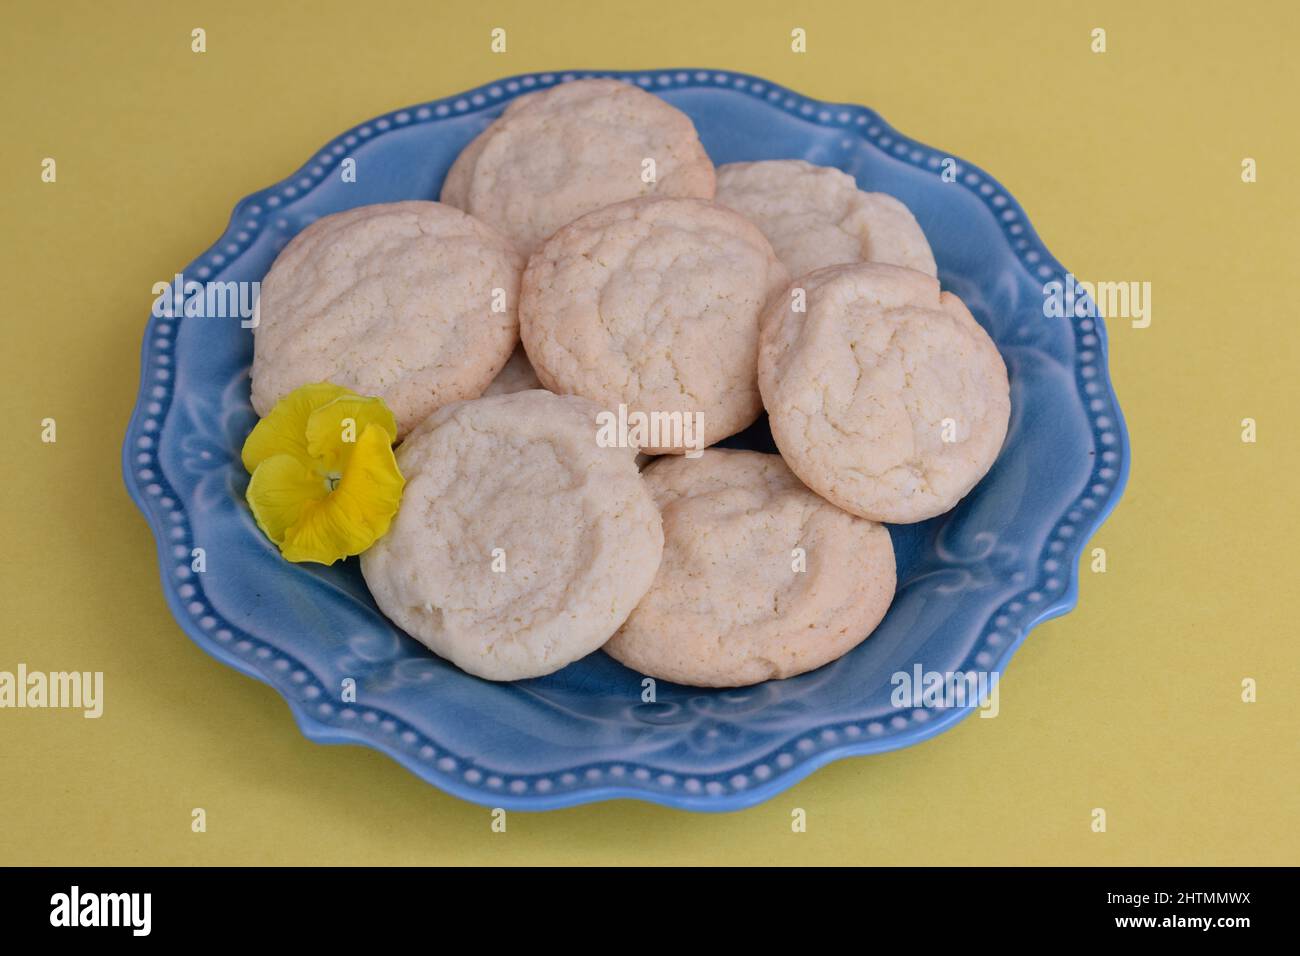 Biscuits au thé du Sud faits maison présentés sur une assiette bleue avec une pansy jaune. Banque D'Images